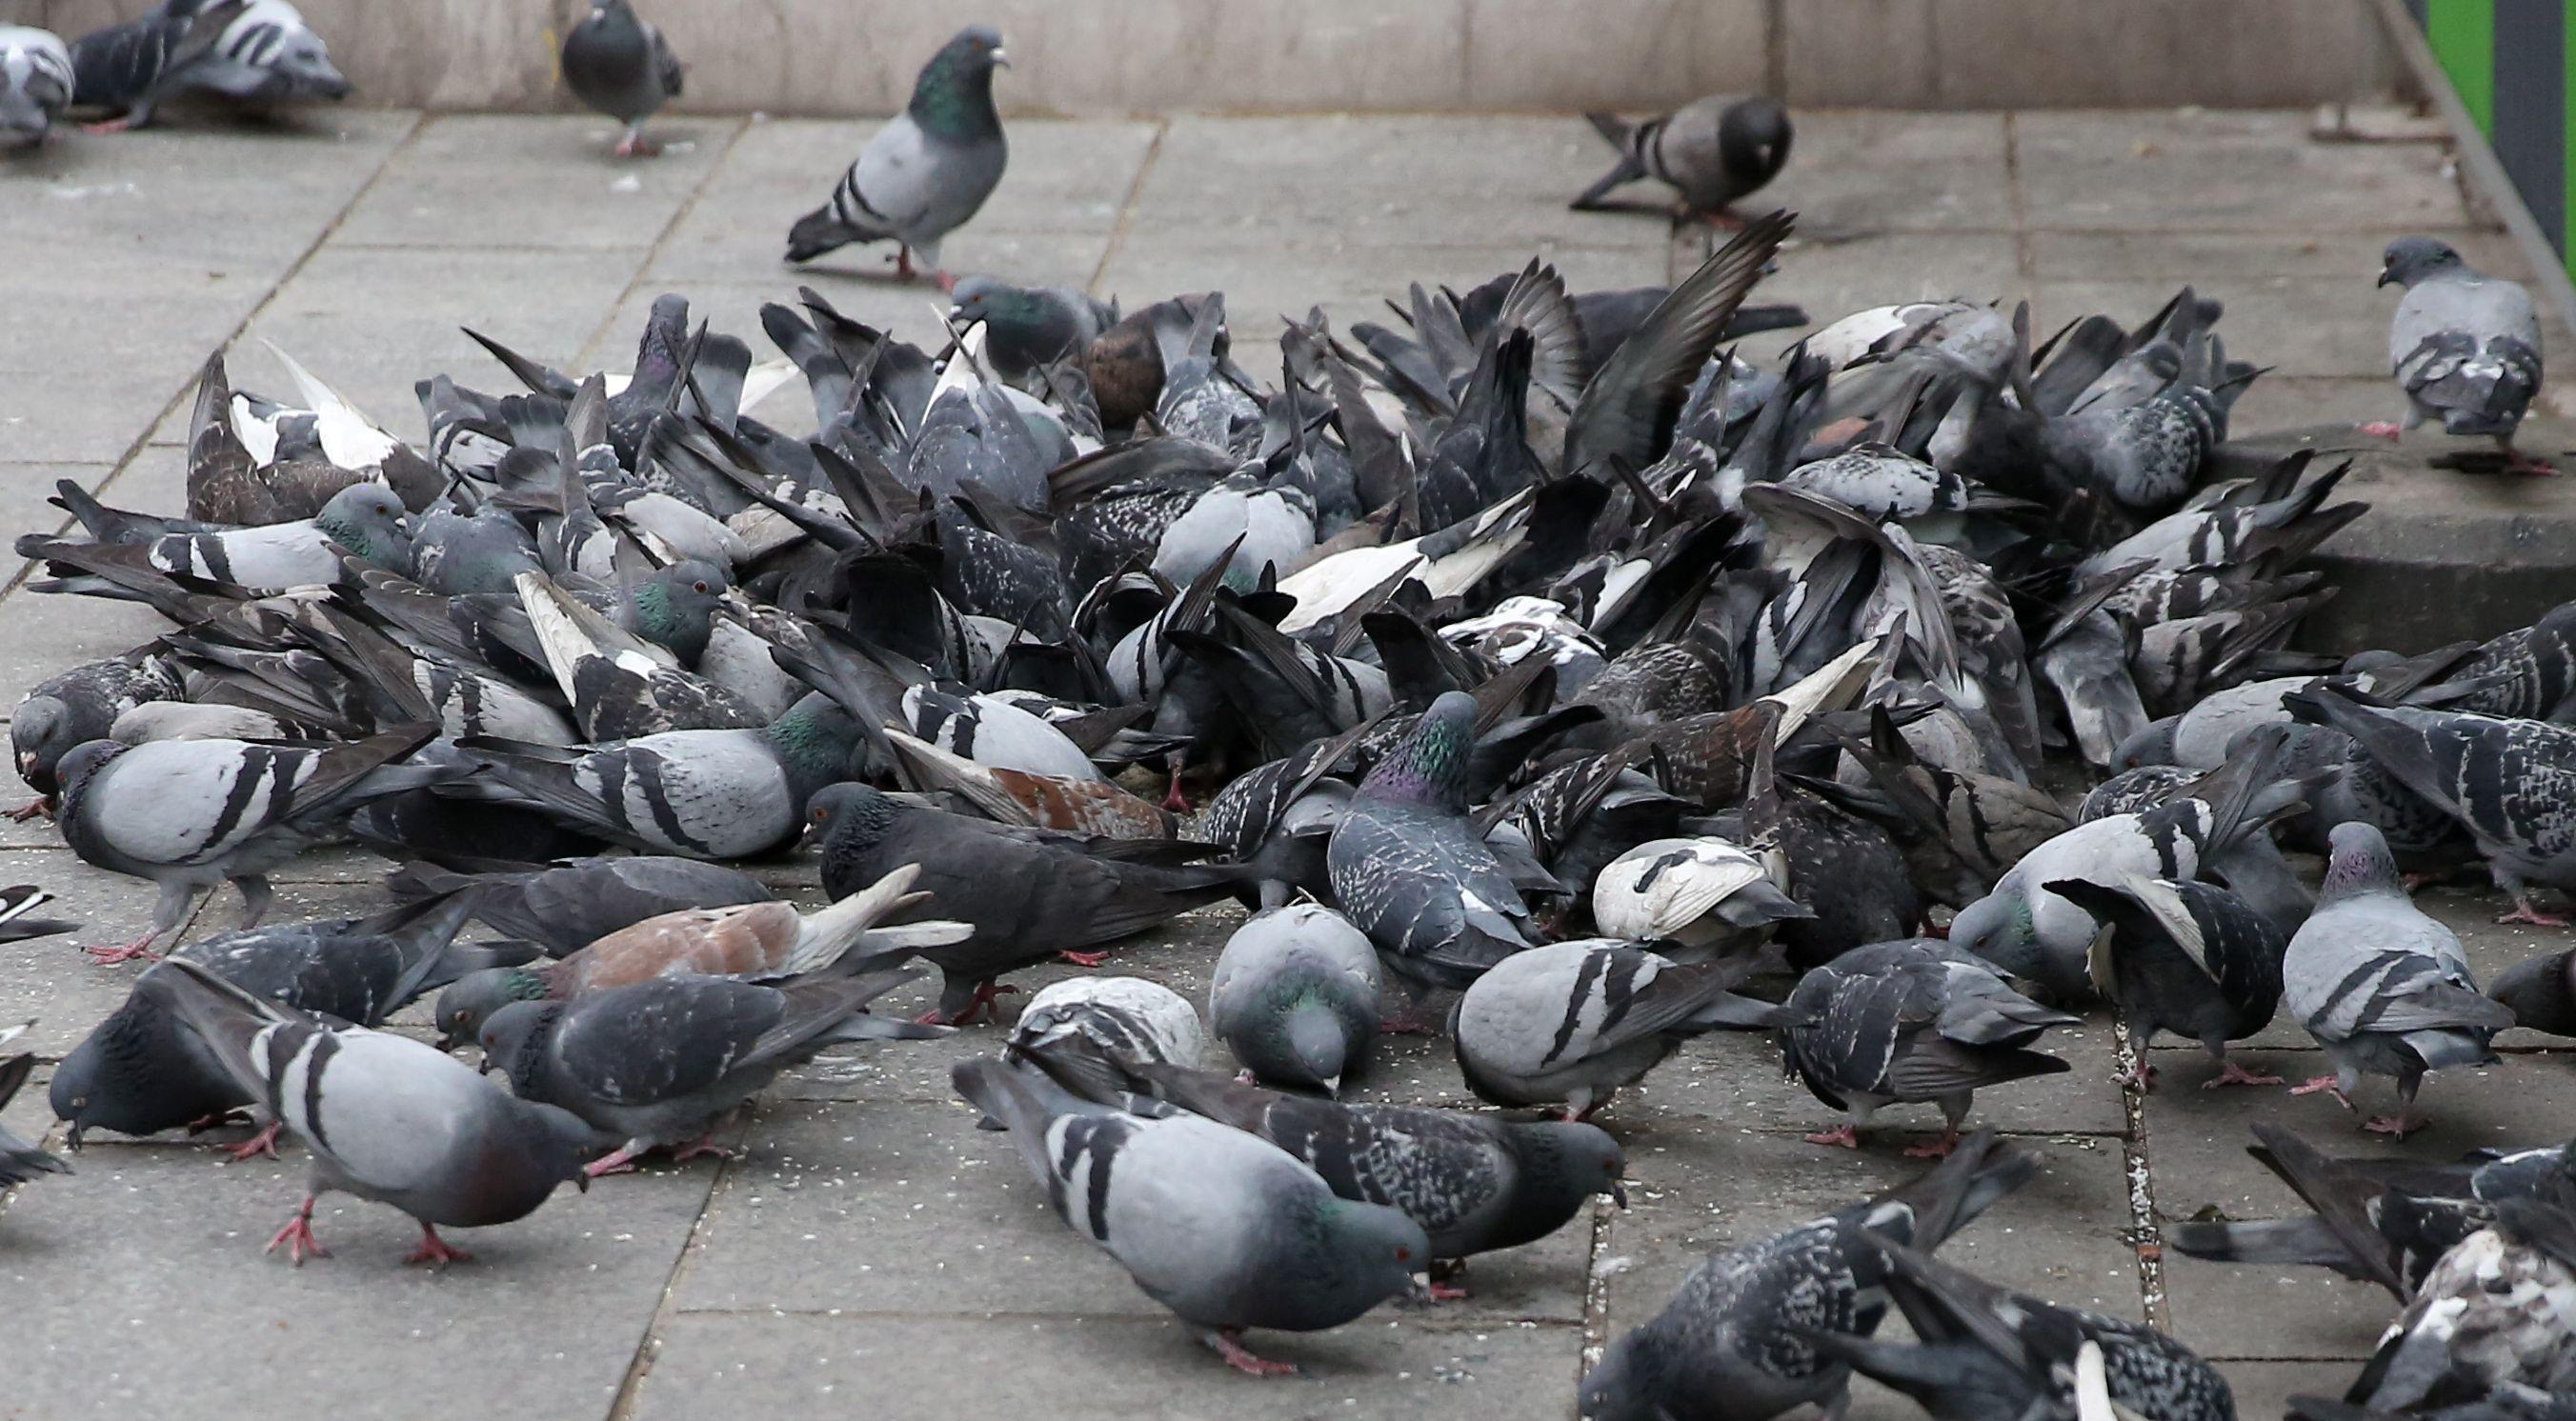 L'association PAZ surveille de près les villes dans leur lutte contre les pigeons et les nuisances associées (Illustration). LP/Guillaume Georges